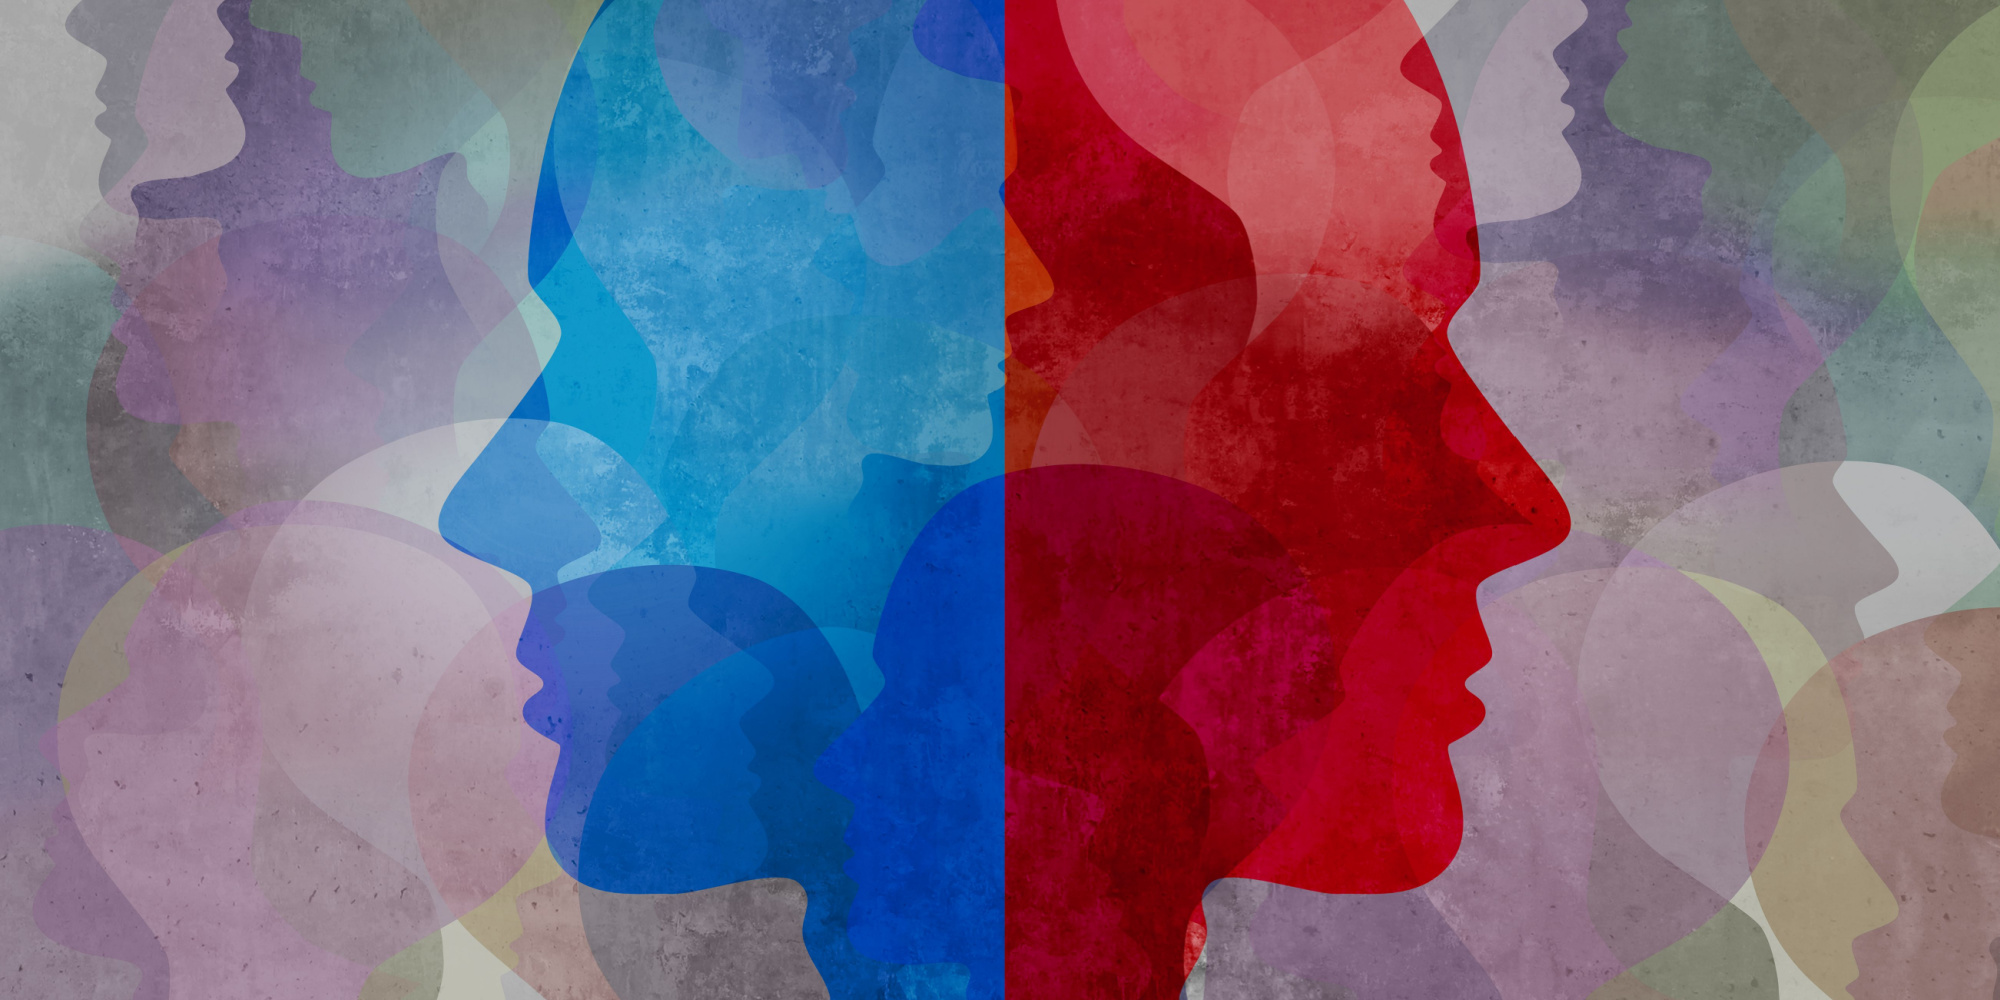 borderline personality disorder vs. bipolar disorder